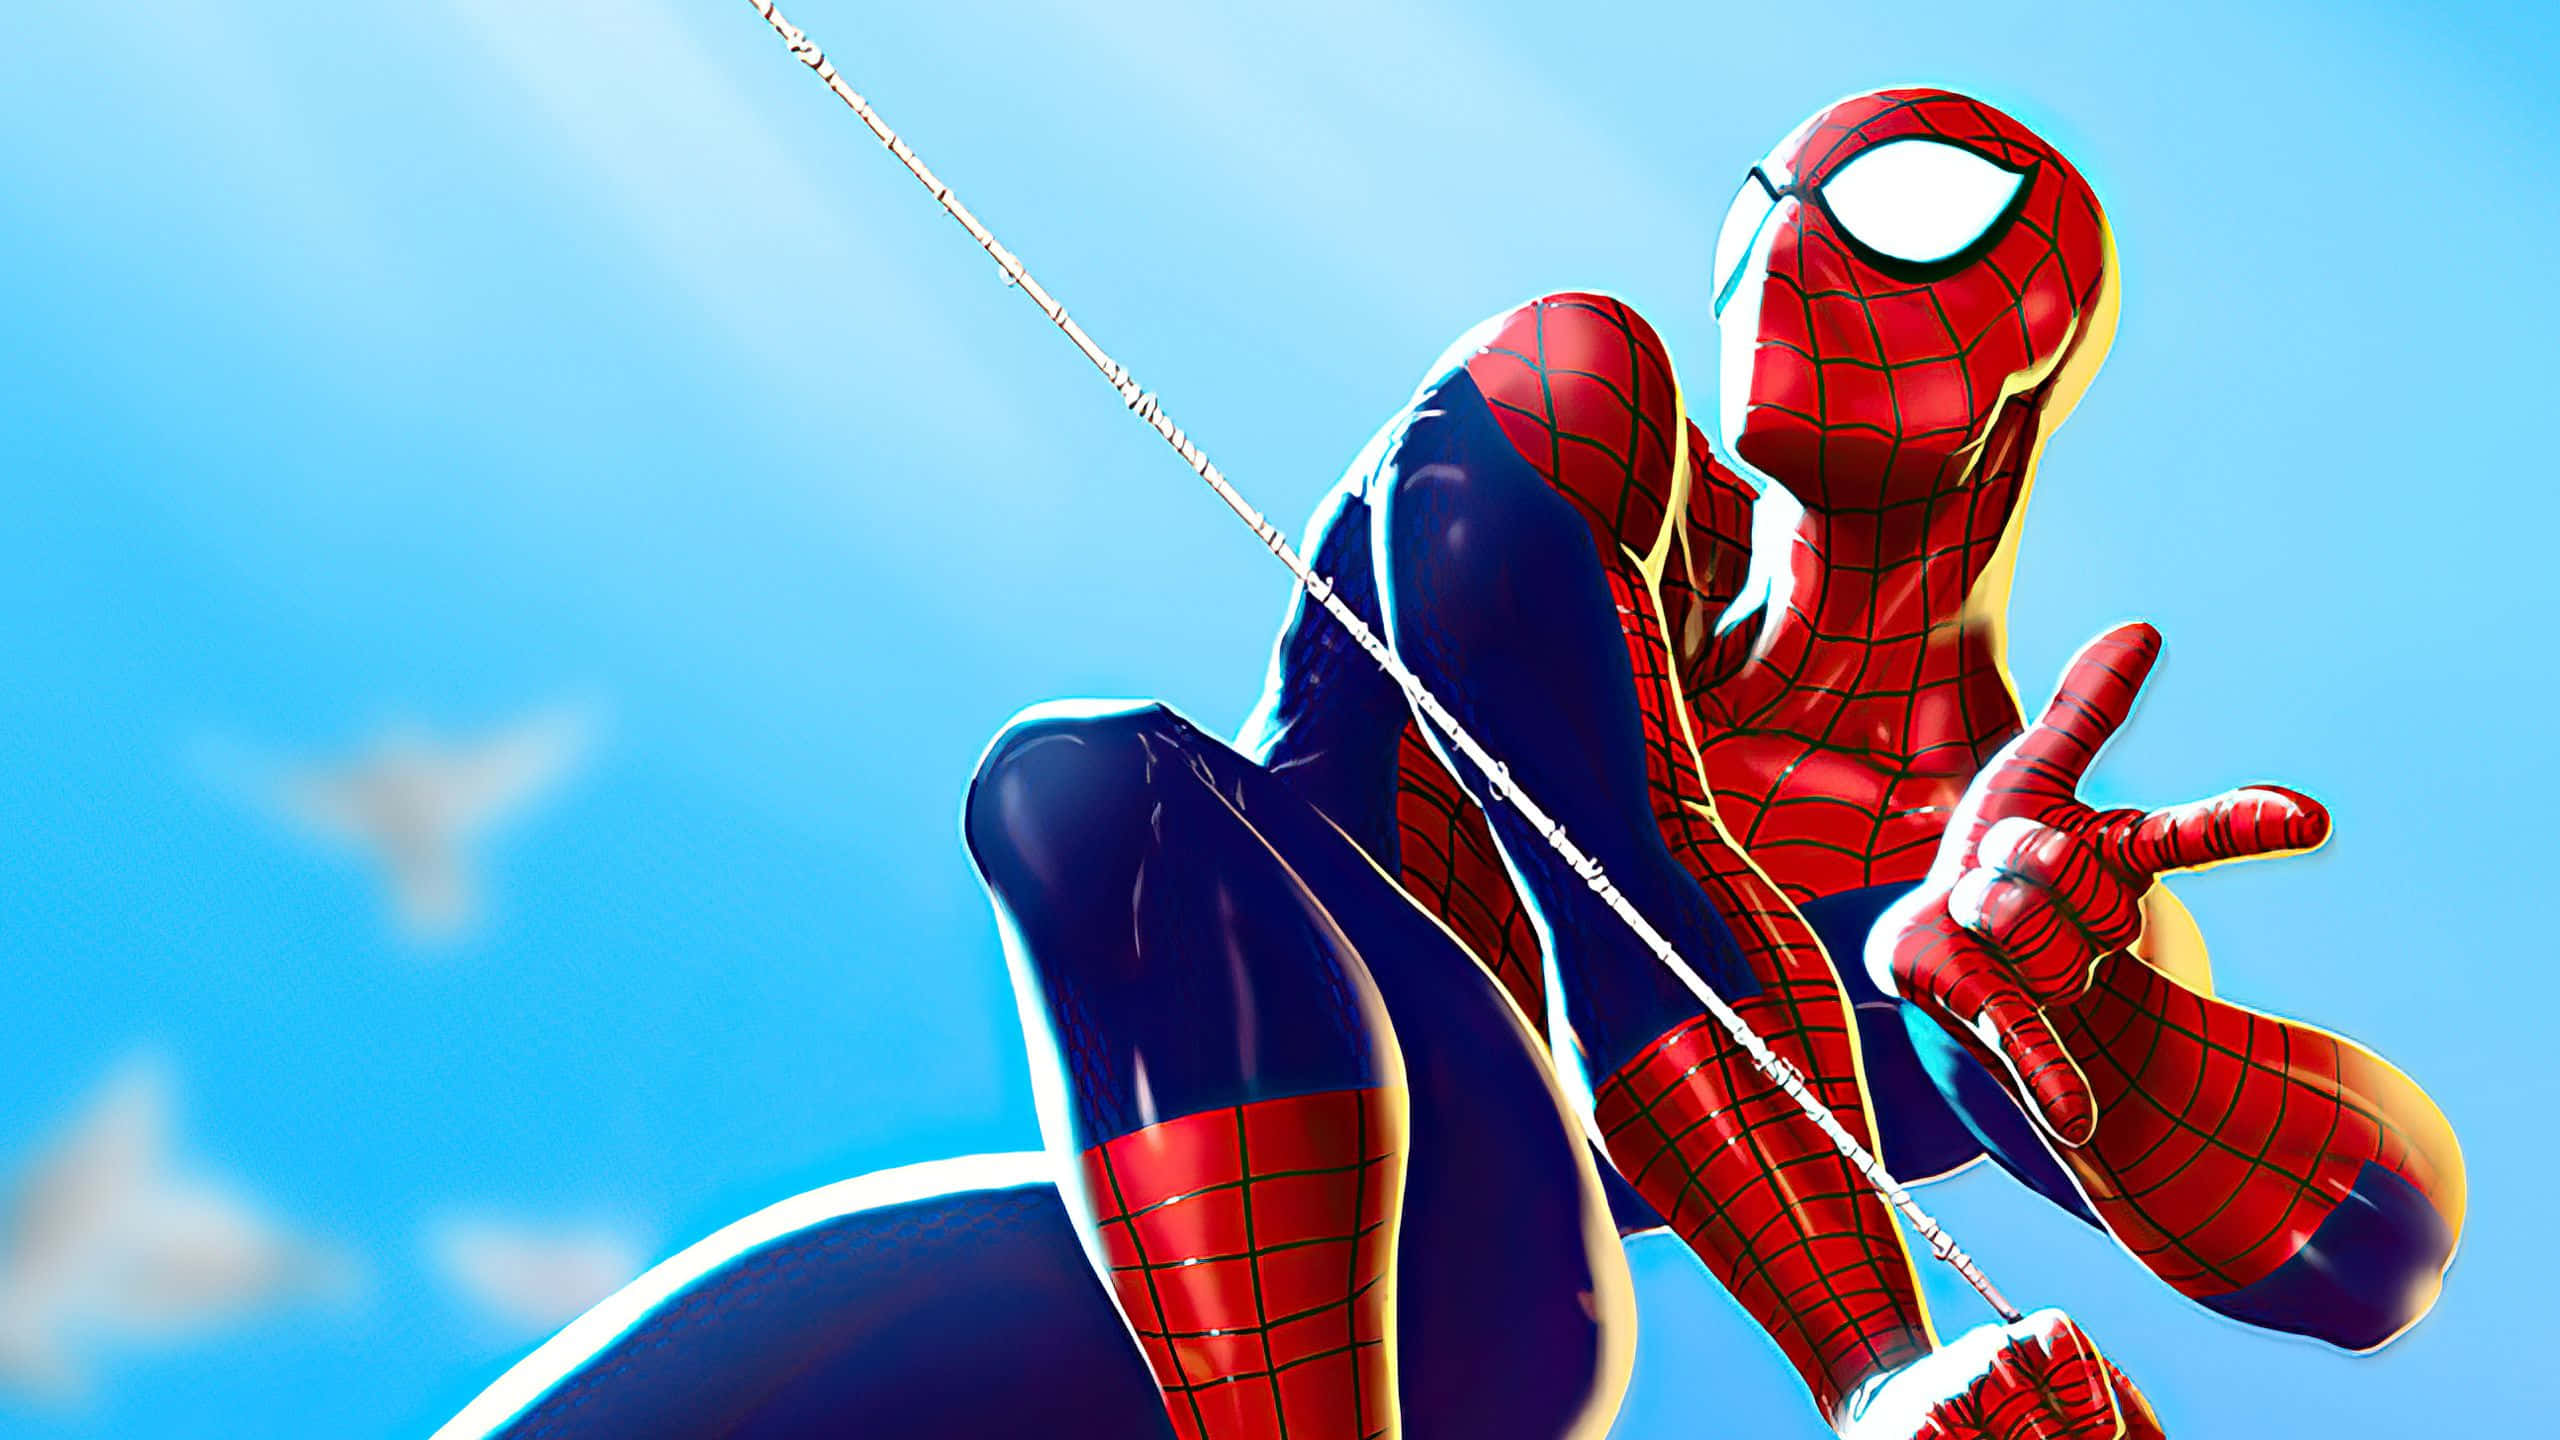 Web-Slinging Spider-Man Wallpaper Wallpaper